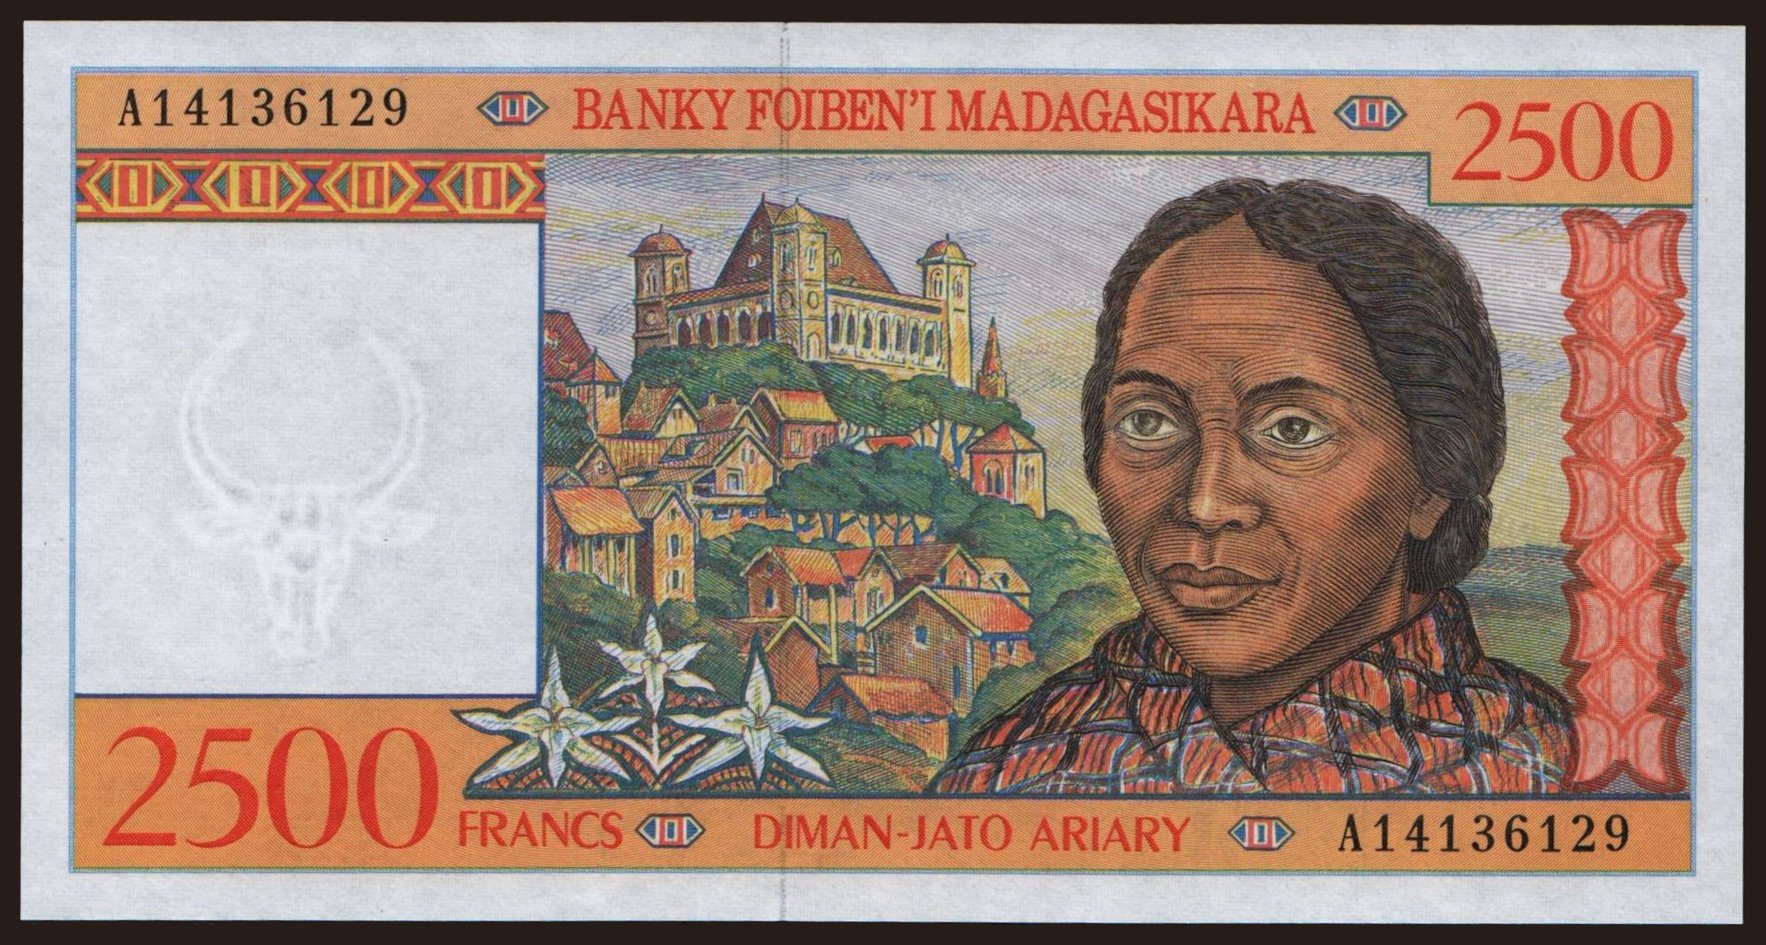 2500 francs, 1998